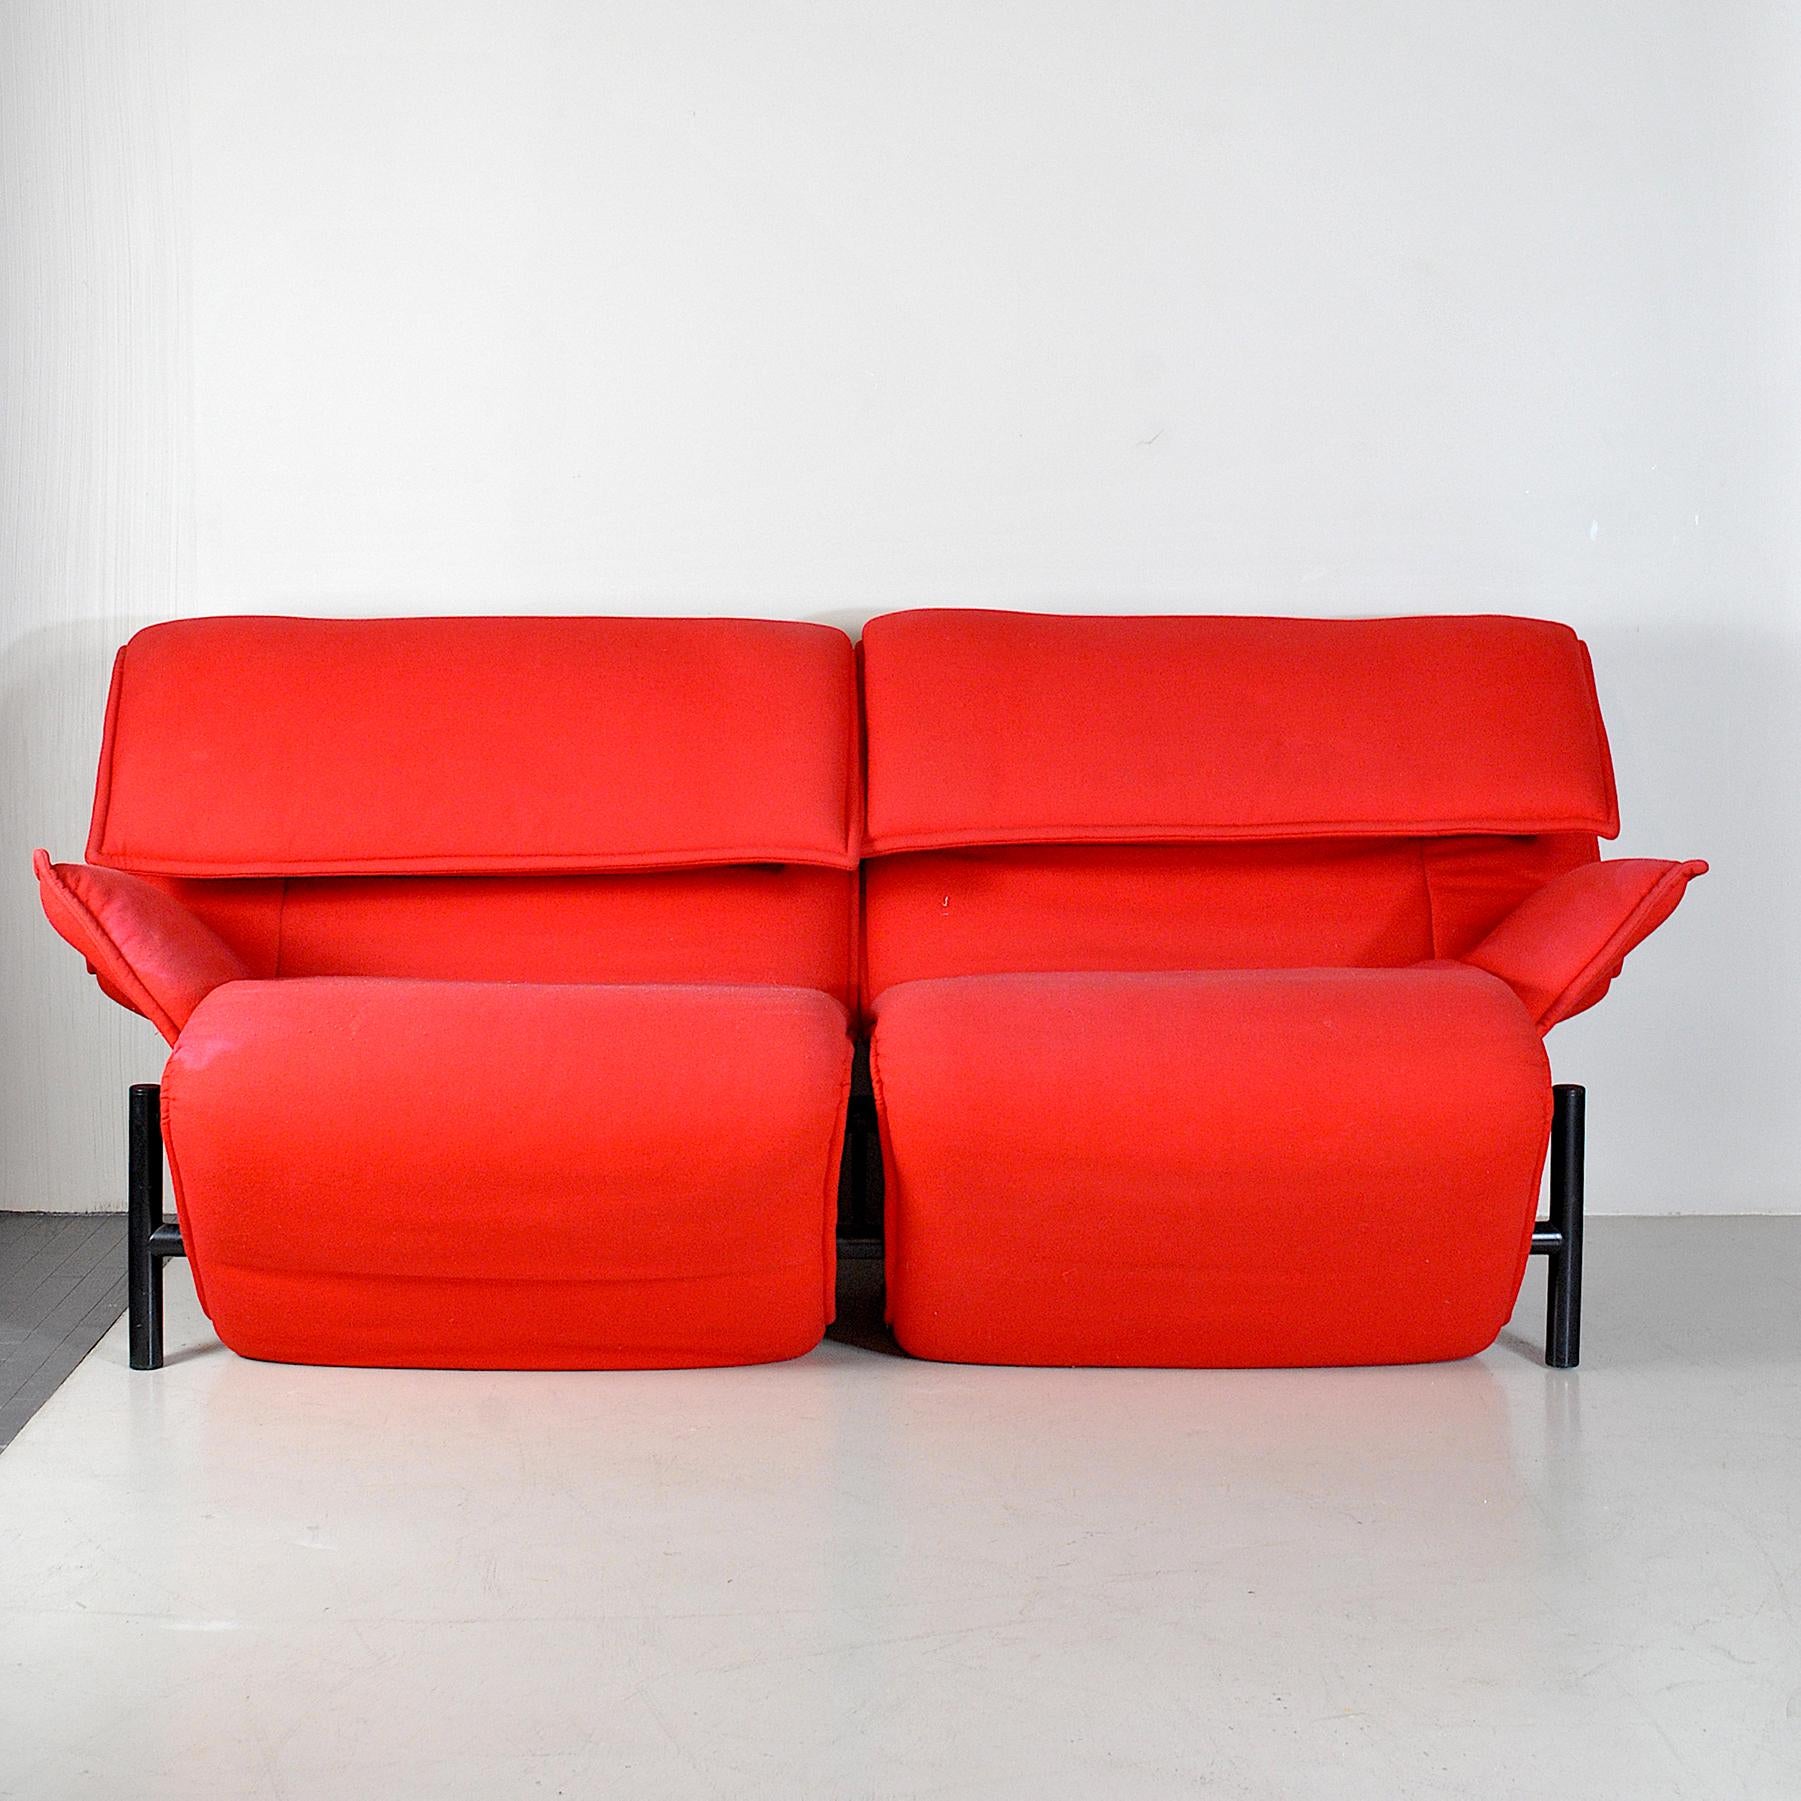 Vico Magistretti two-seat sofa model 